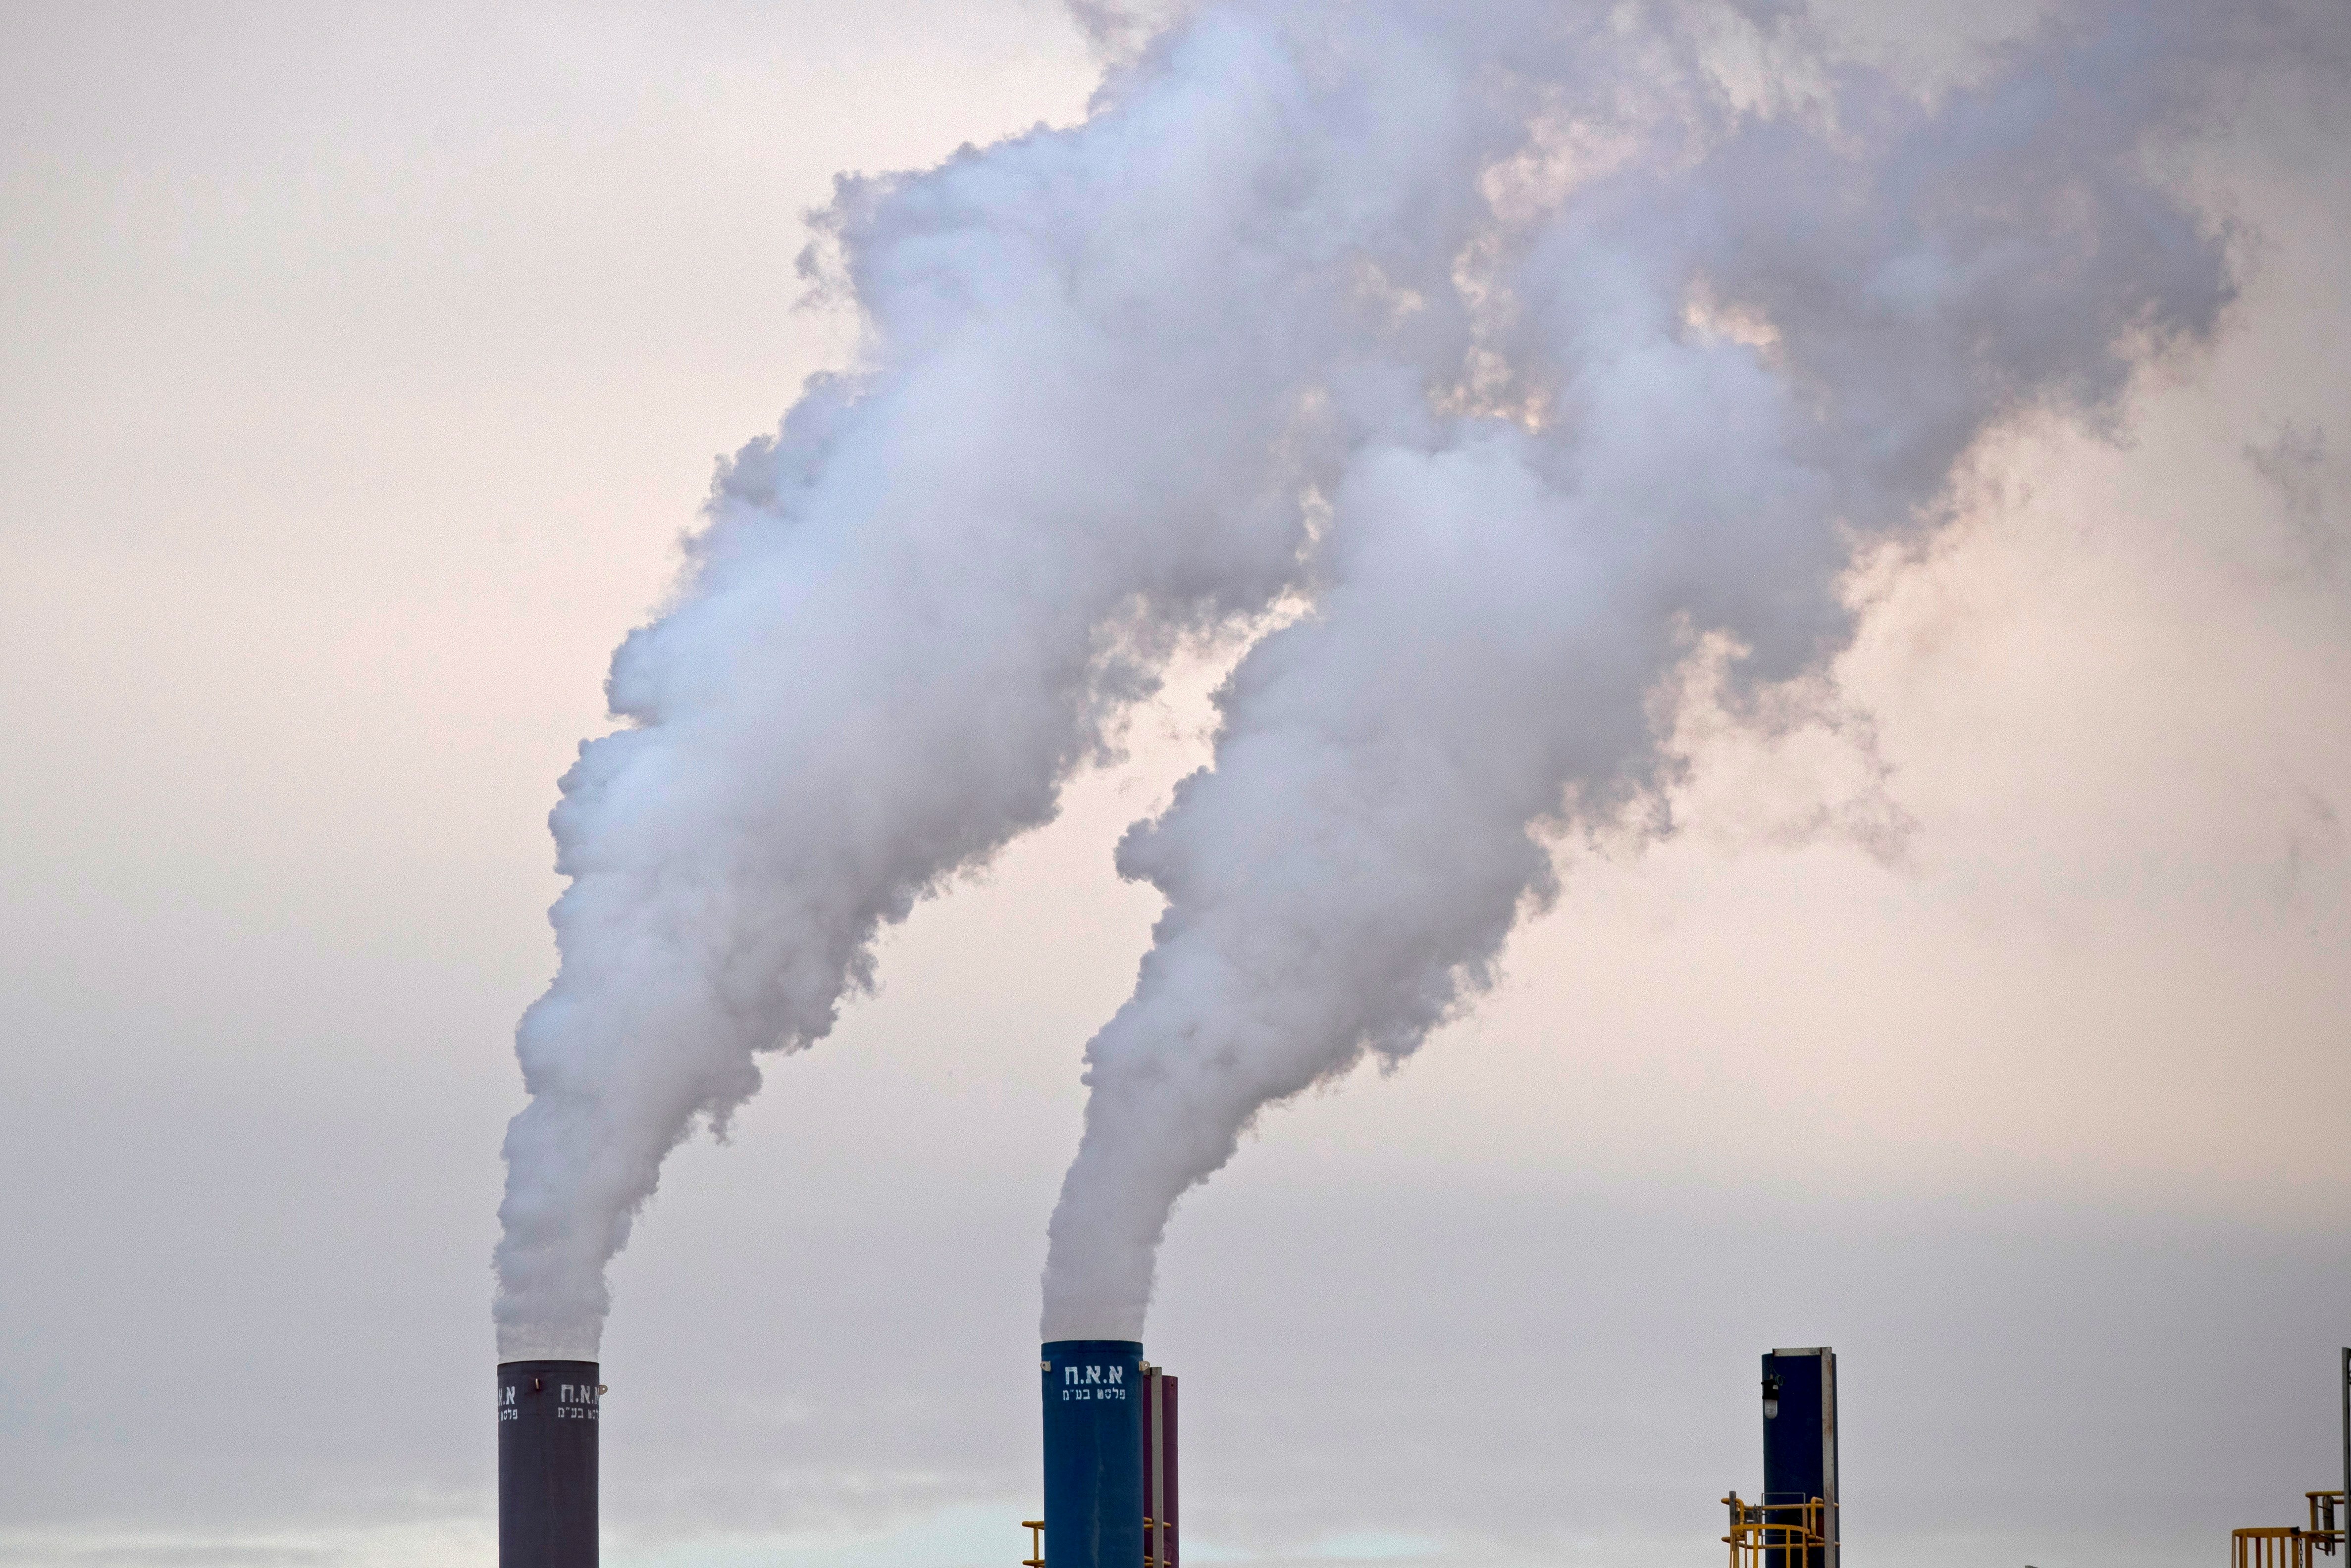 IMAGEN DE ARCHIVO: Humo sale de las chimeneas de la Fábrica del Mar Muerto, una planta de potasa israelí en Sodoma, establecida en 1930, en la costa del Mar Muerto de Israel, 02 de diciembre de 2018. Según un informe de la ONU, las emisiones de dióxido de carbono (CO2) han aumentado por primera vez en cuatro años. El informe llega pocos días antes de la Conferencia de las Naciones Unidas sobre el Cambio Climático COP24 que tendrá lugar en Polonia del 2 al 14 de diciembre. (Polonia) EFE / EPA / ATEF SAFADI
